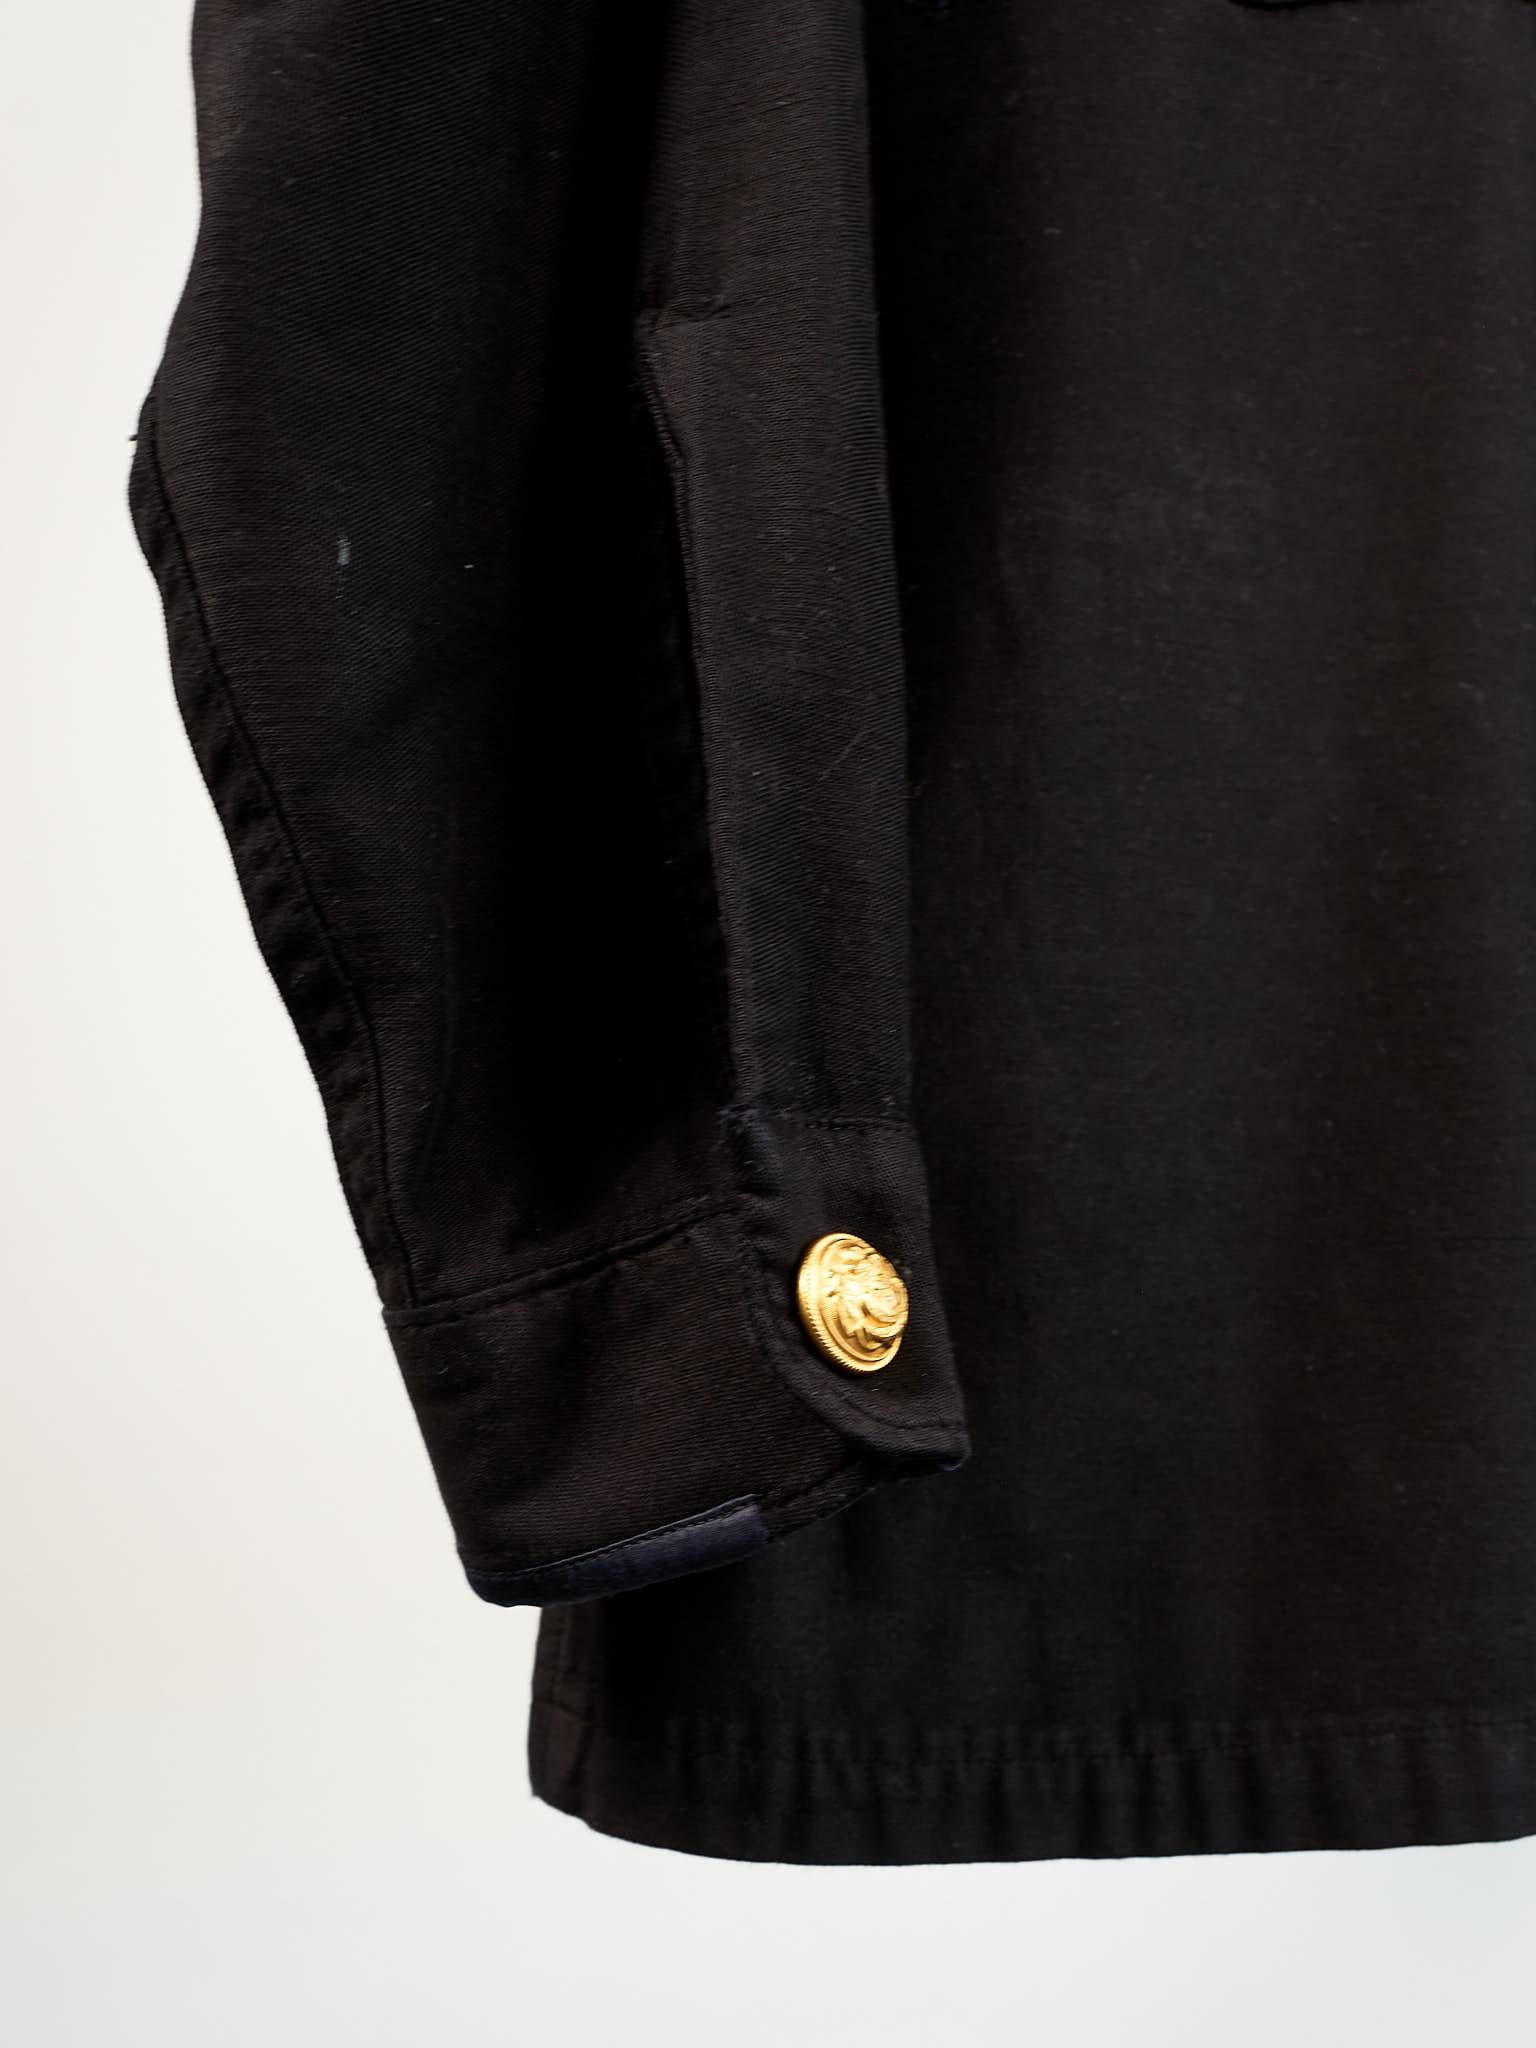 Vintage Jacket in Black Embellished Silver Fringe Braids Gold Buttons Large 3